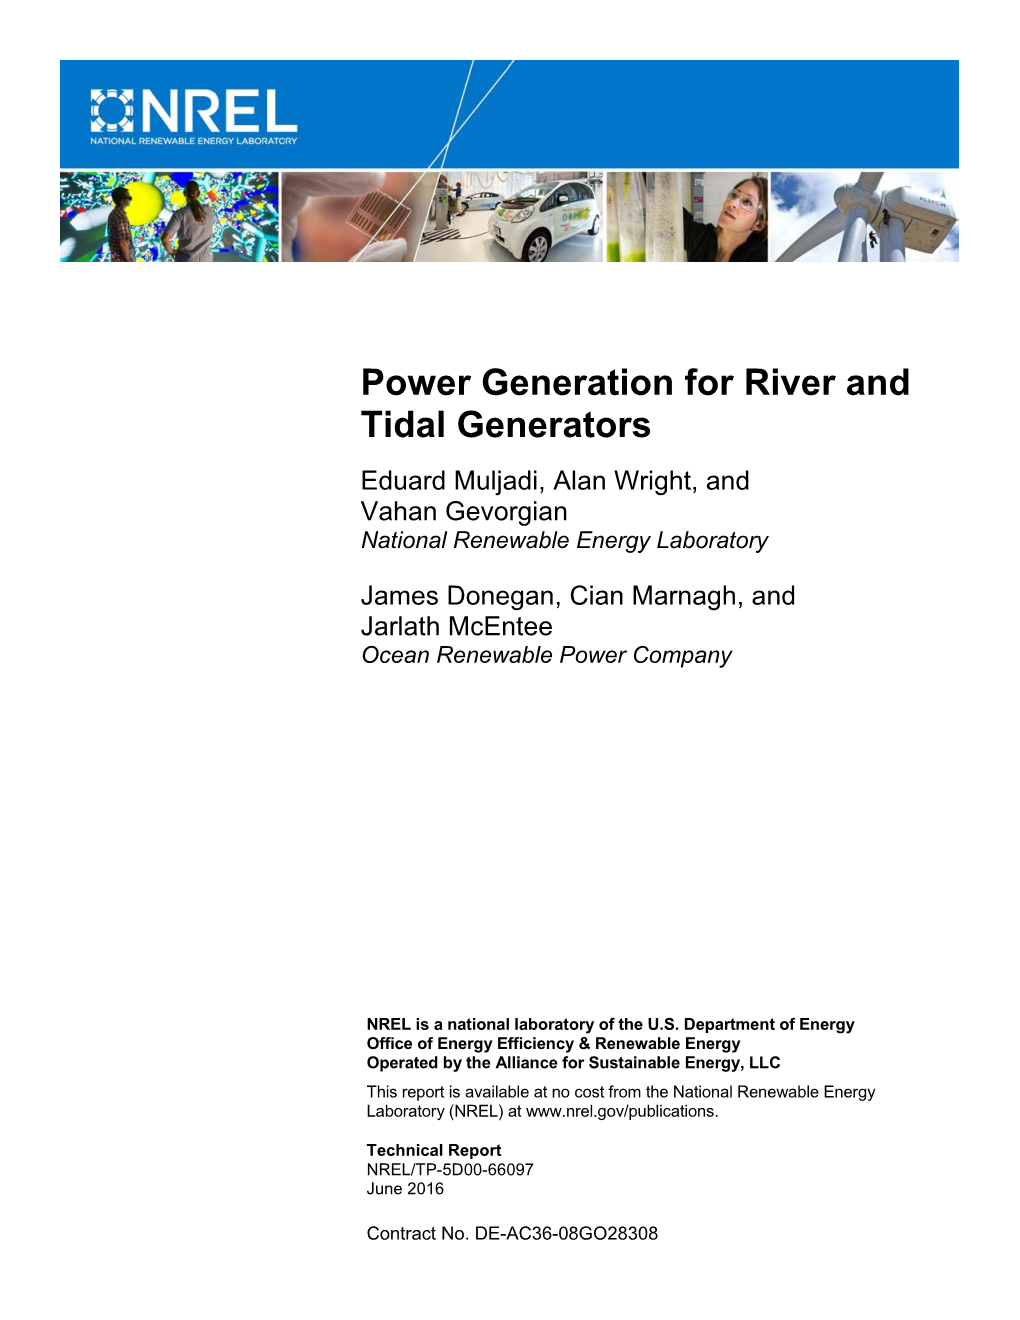 Power Generation for River and Tidal Generators Eduard Muljadi, Alan Wright, and Vahan Gevorgian National Renewable Energy Laboratory